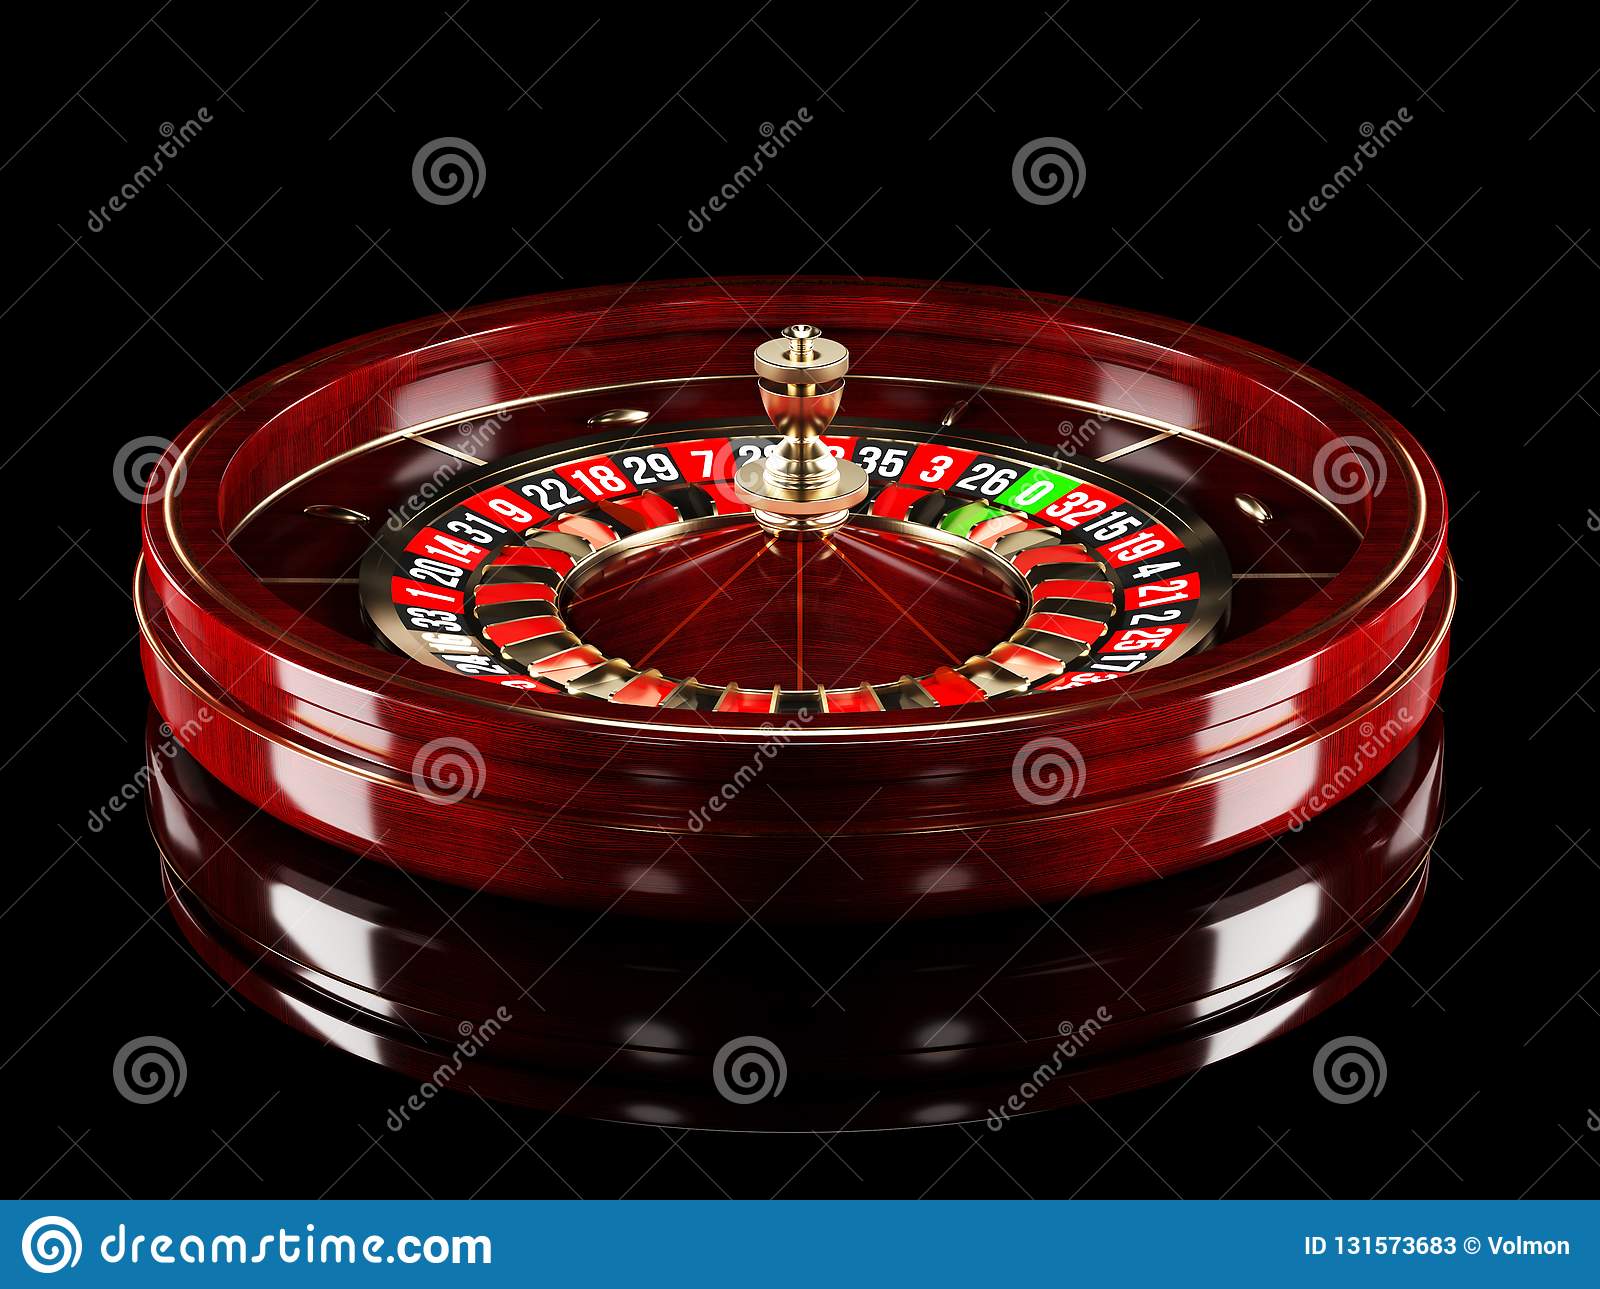 Casino do chacrinha roda e avisa